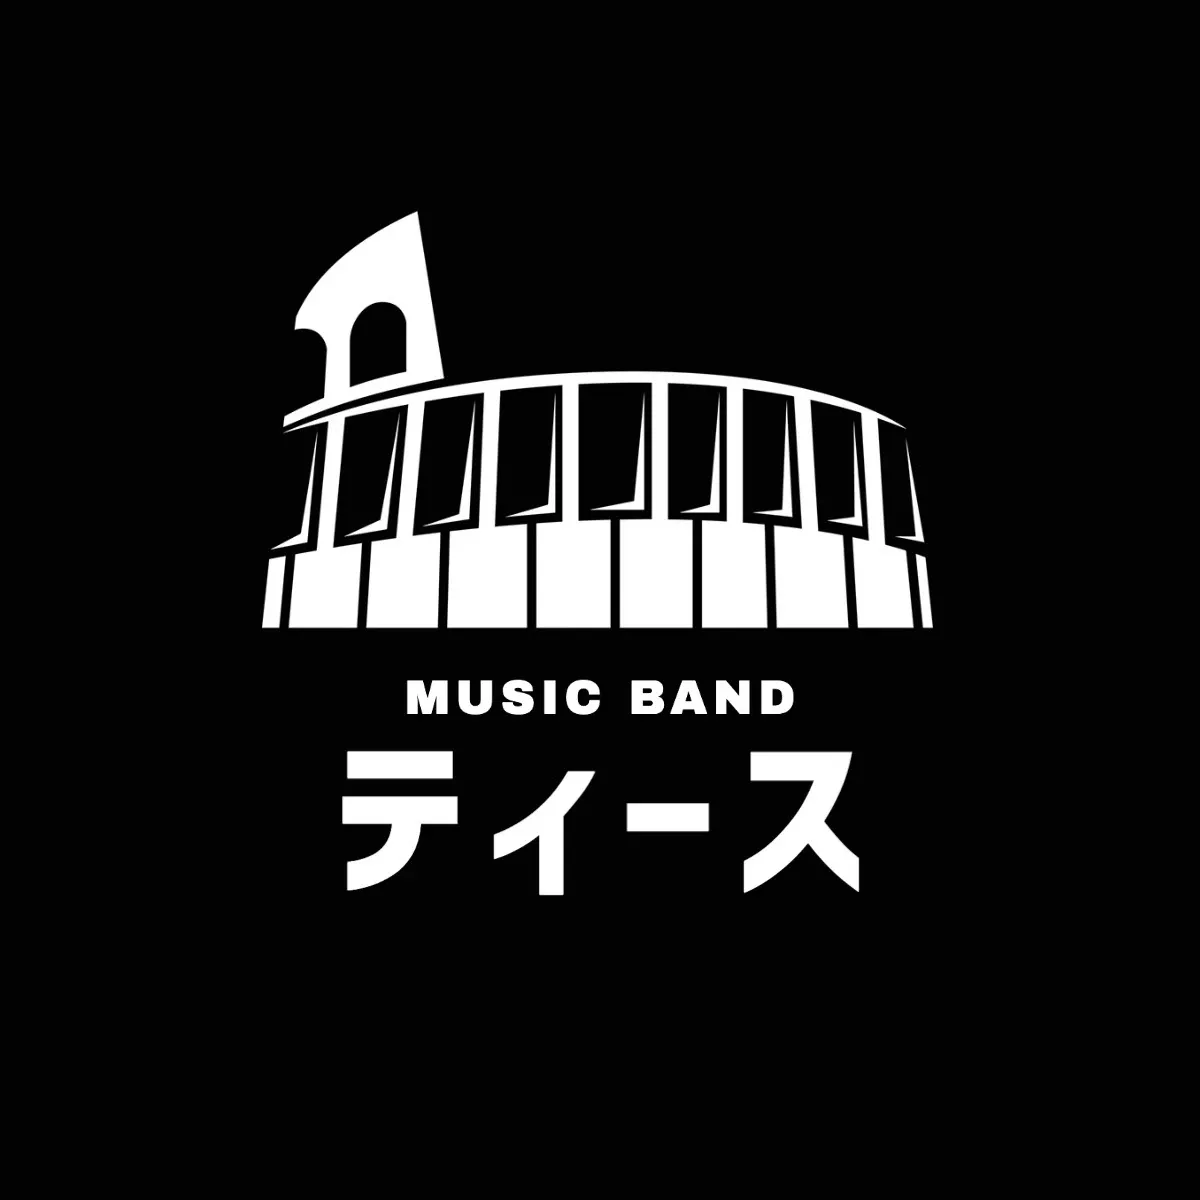 Teeth Band logo